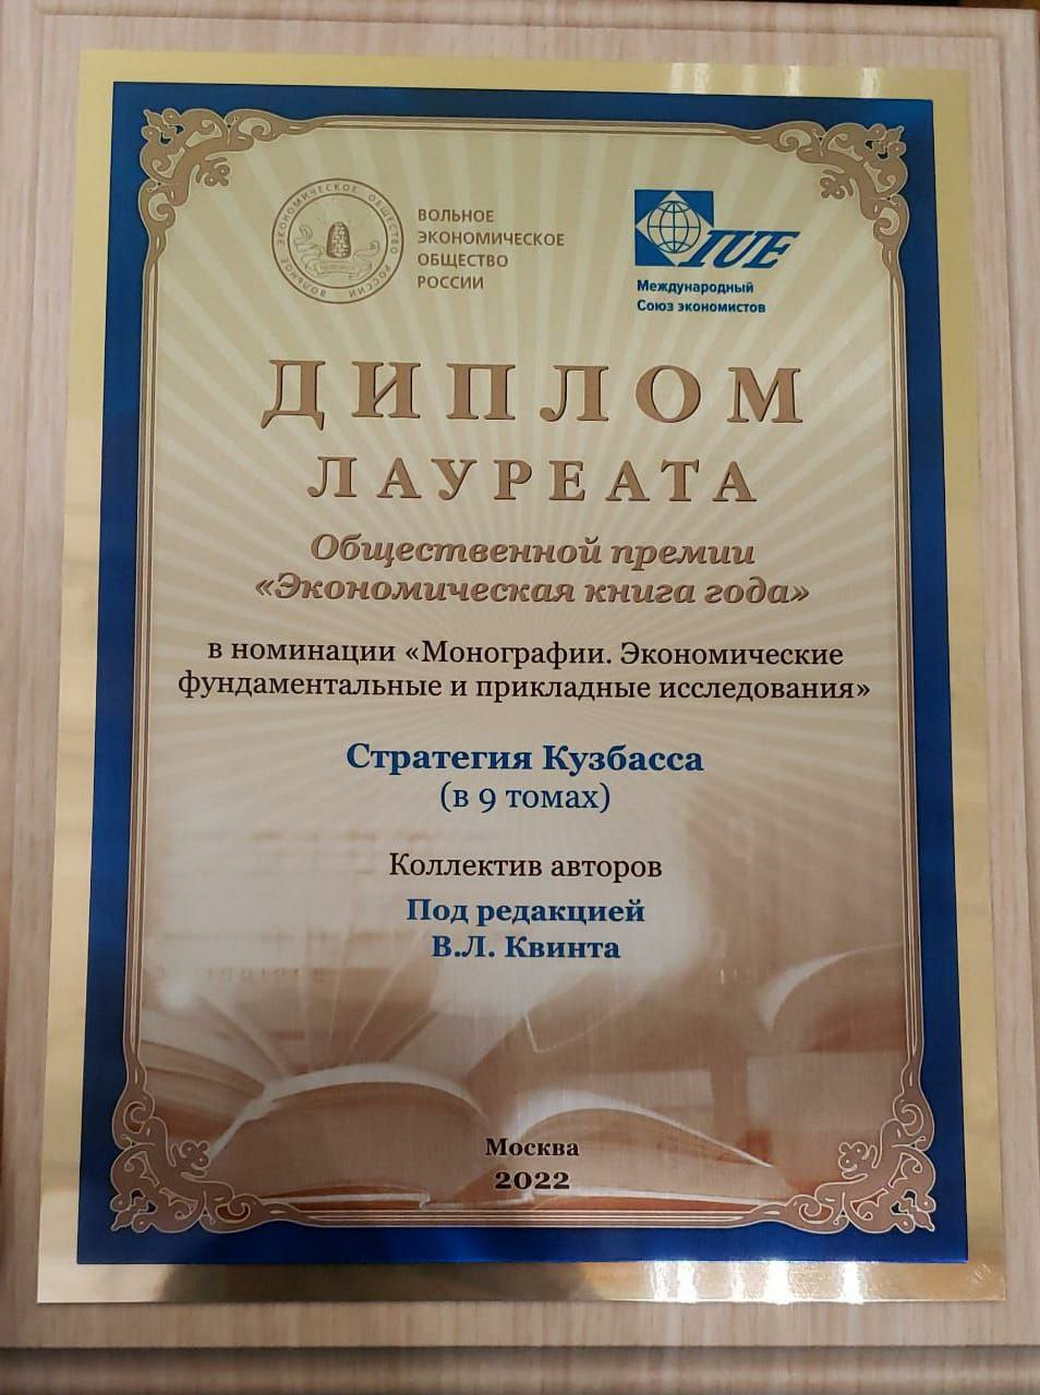 «Стратегия КуZбасса» стала лауреатом премии «Экономическая книга года»